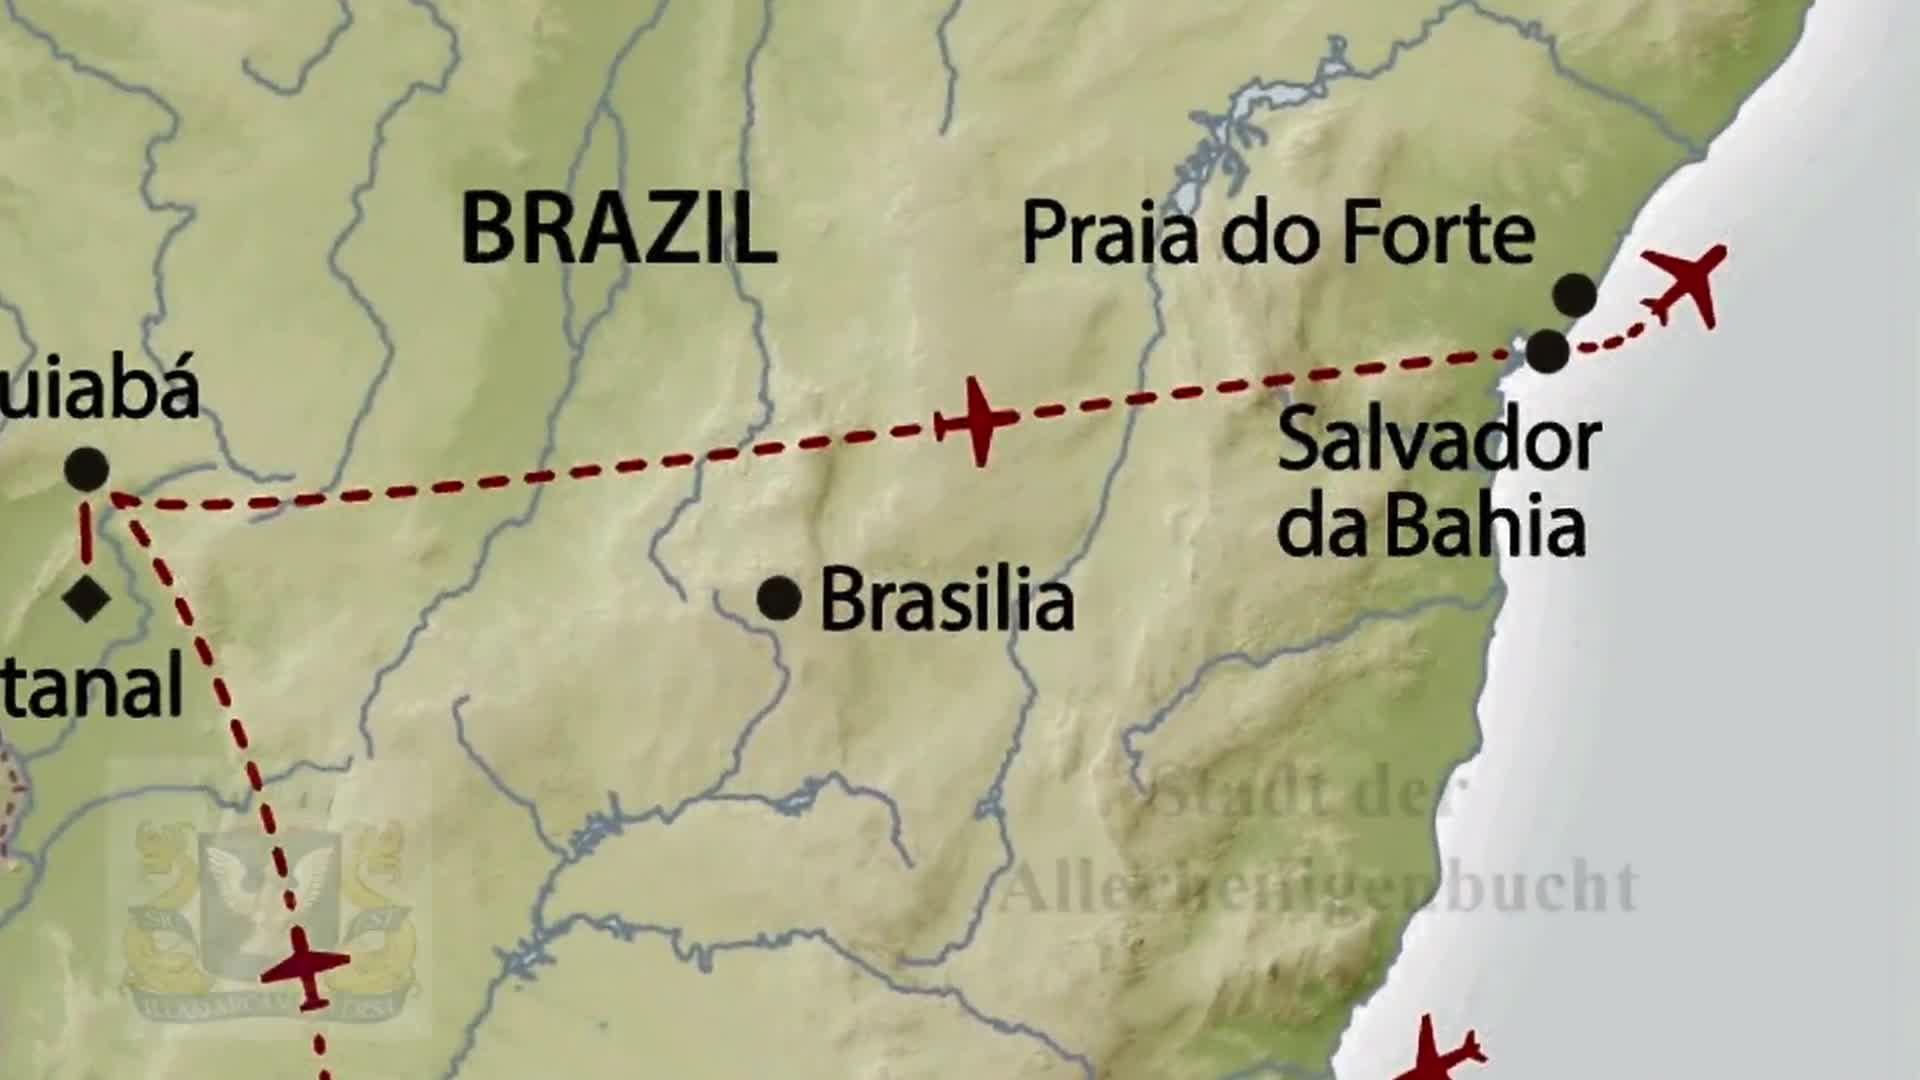 Salvador de Bahia